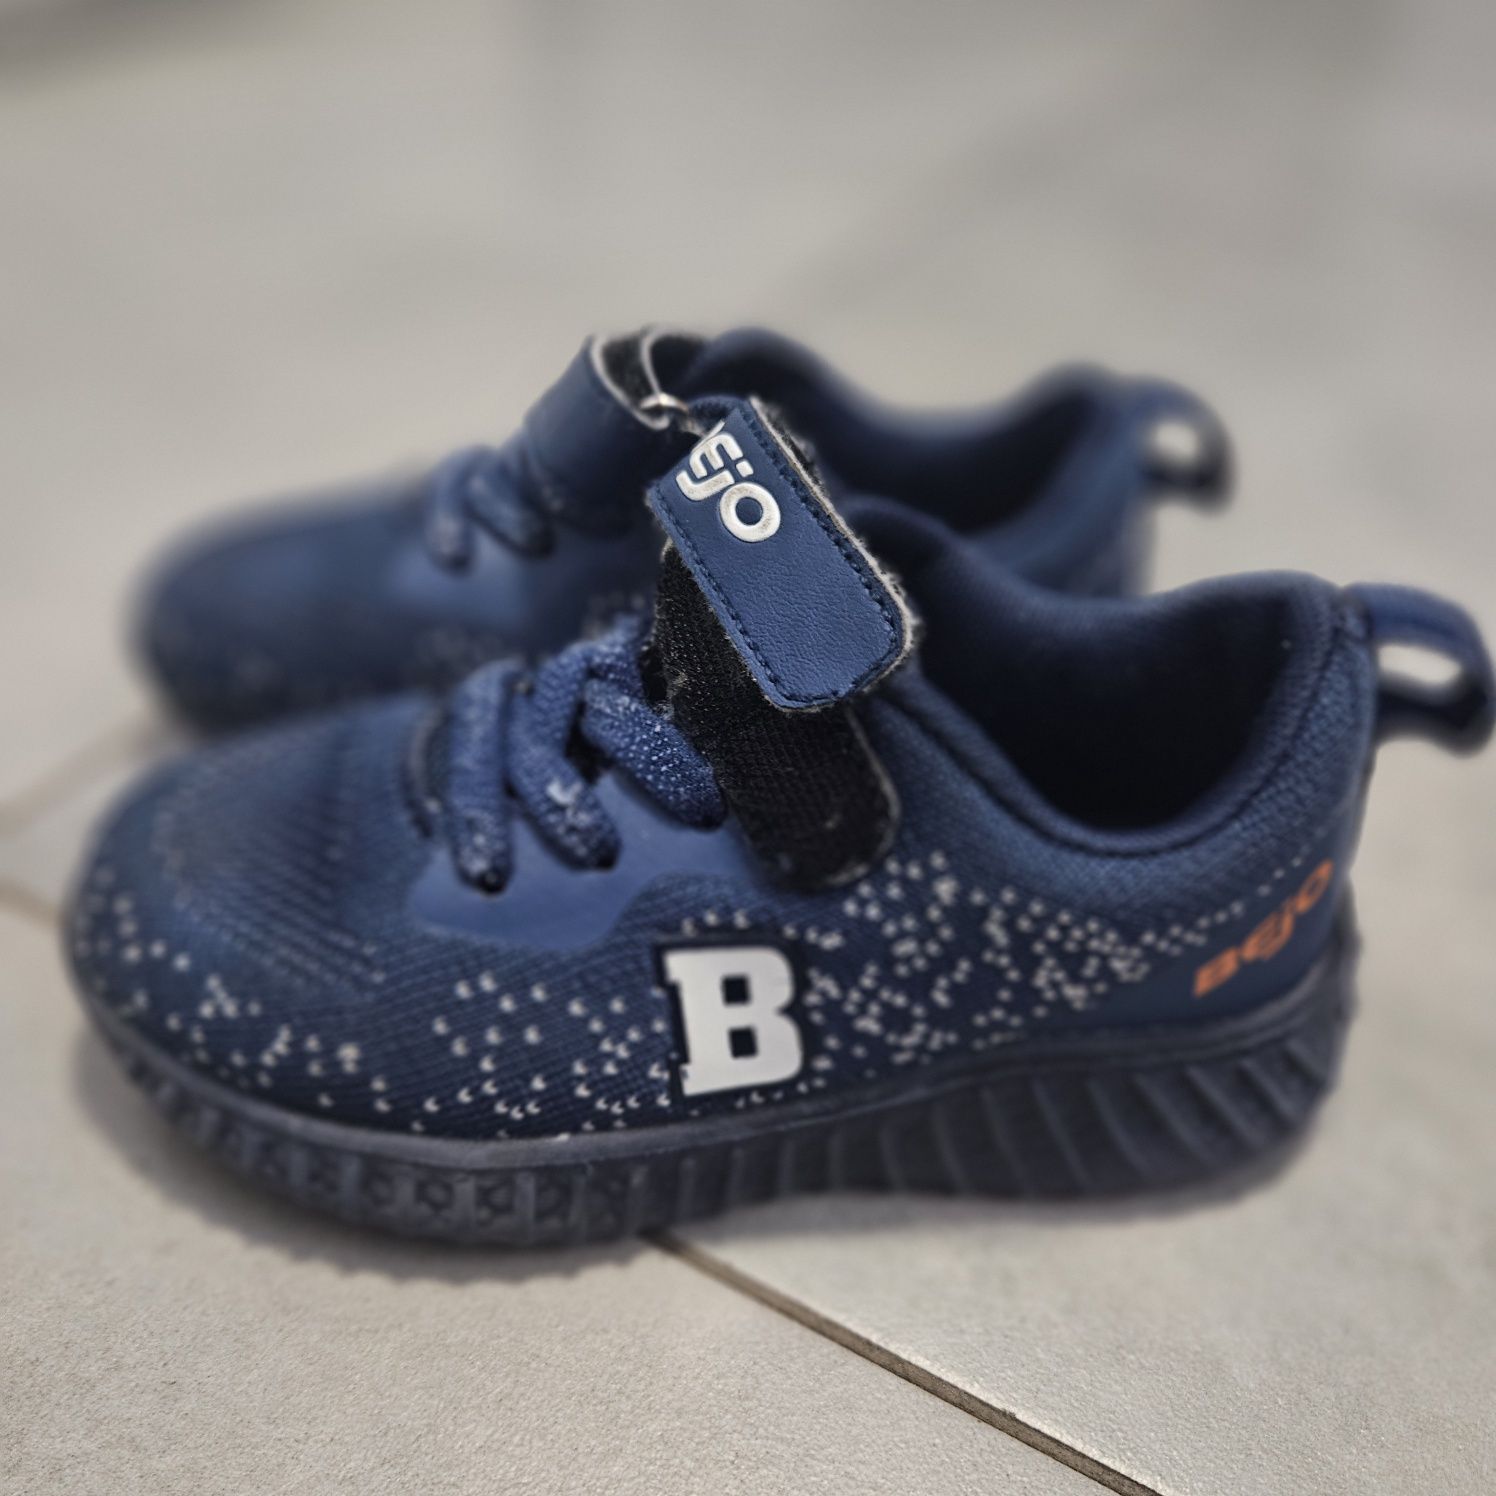 Buty dla dziecka Bejo